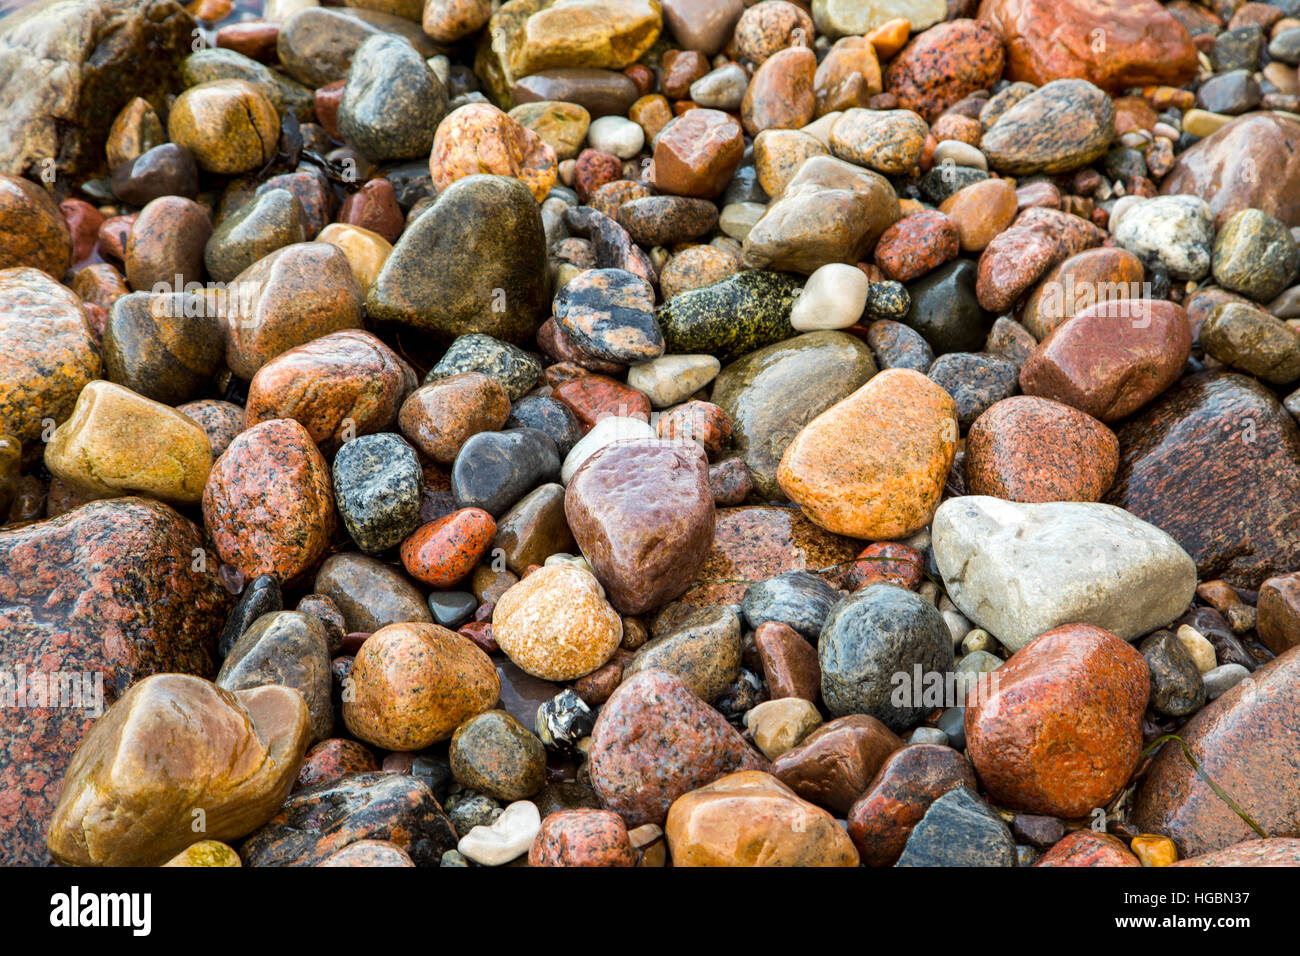 Beaucoup de grandes et petites pierres, cailloux sur une plage, côte de la mer Baltique, l'île de Rügen, Allemagne Banque D'Images